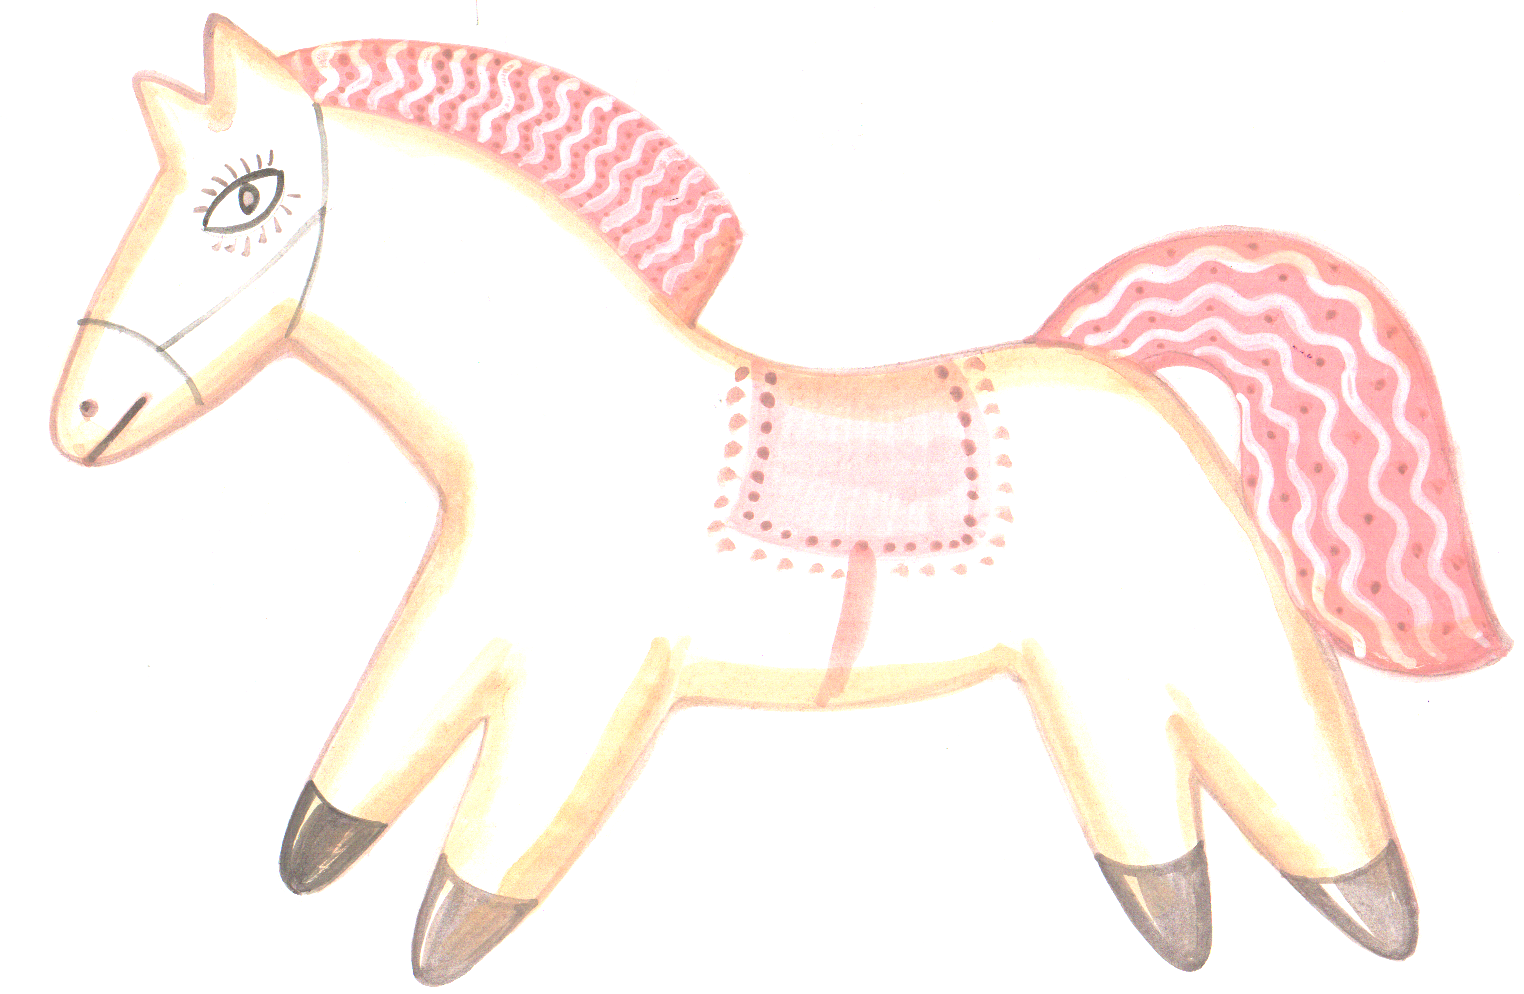 Афанасьев конь с розовой гривой. Астафьев конь с розовой гривой пряник. Розовый пряник Астафьев. Астафьев конь с розовой гривой иллюстрации. Астафьев пряник с розовой гривой.